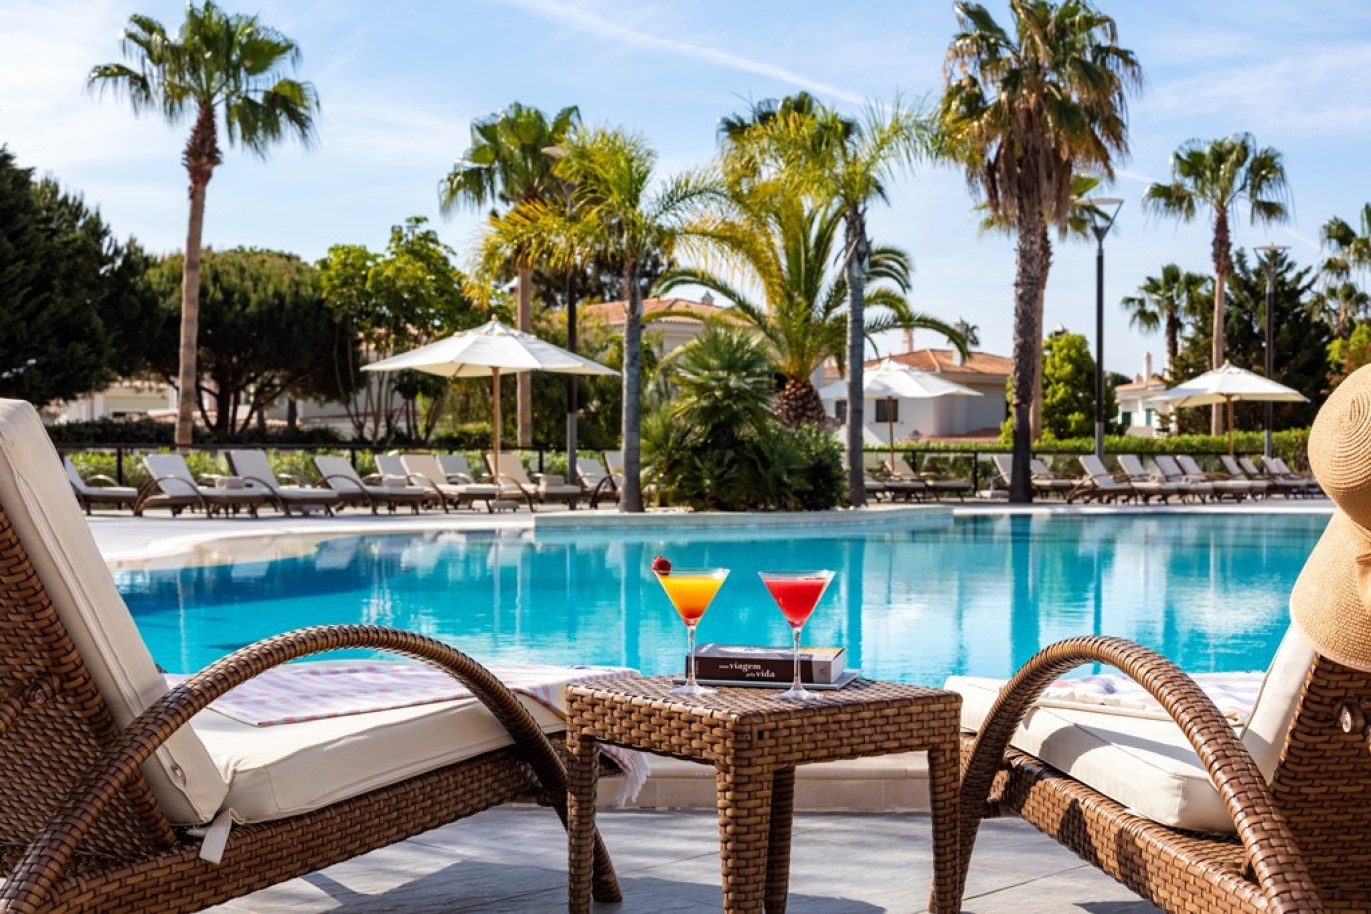 Apartamento, 2 quartos, piscina, para venda na Quinta do Lago, Algarve_262222